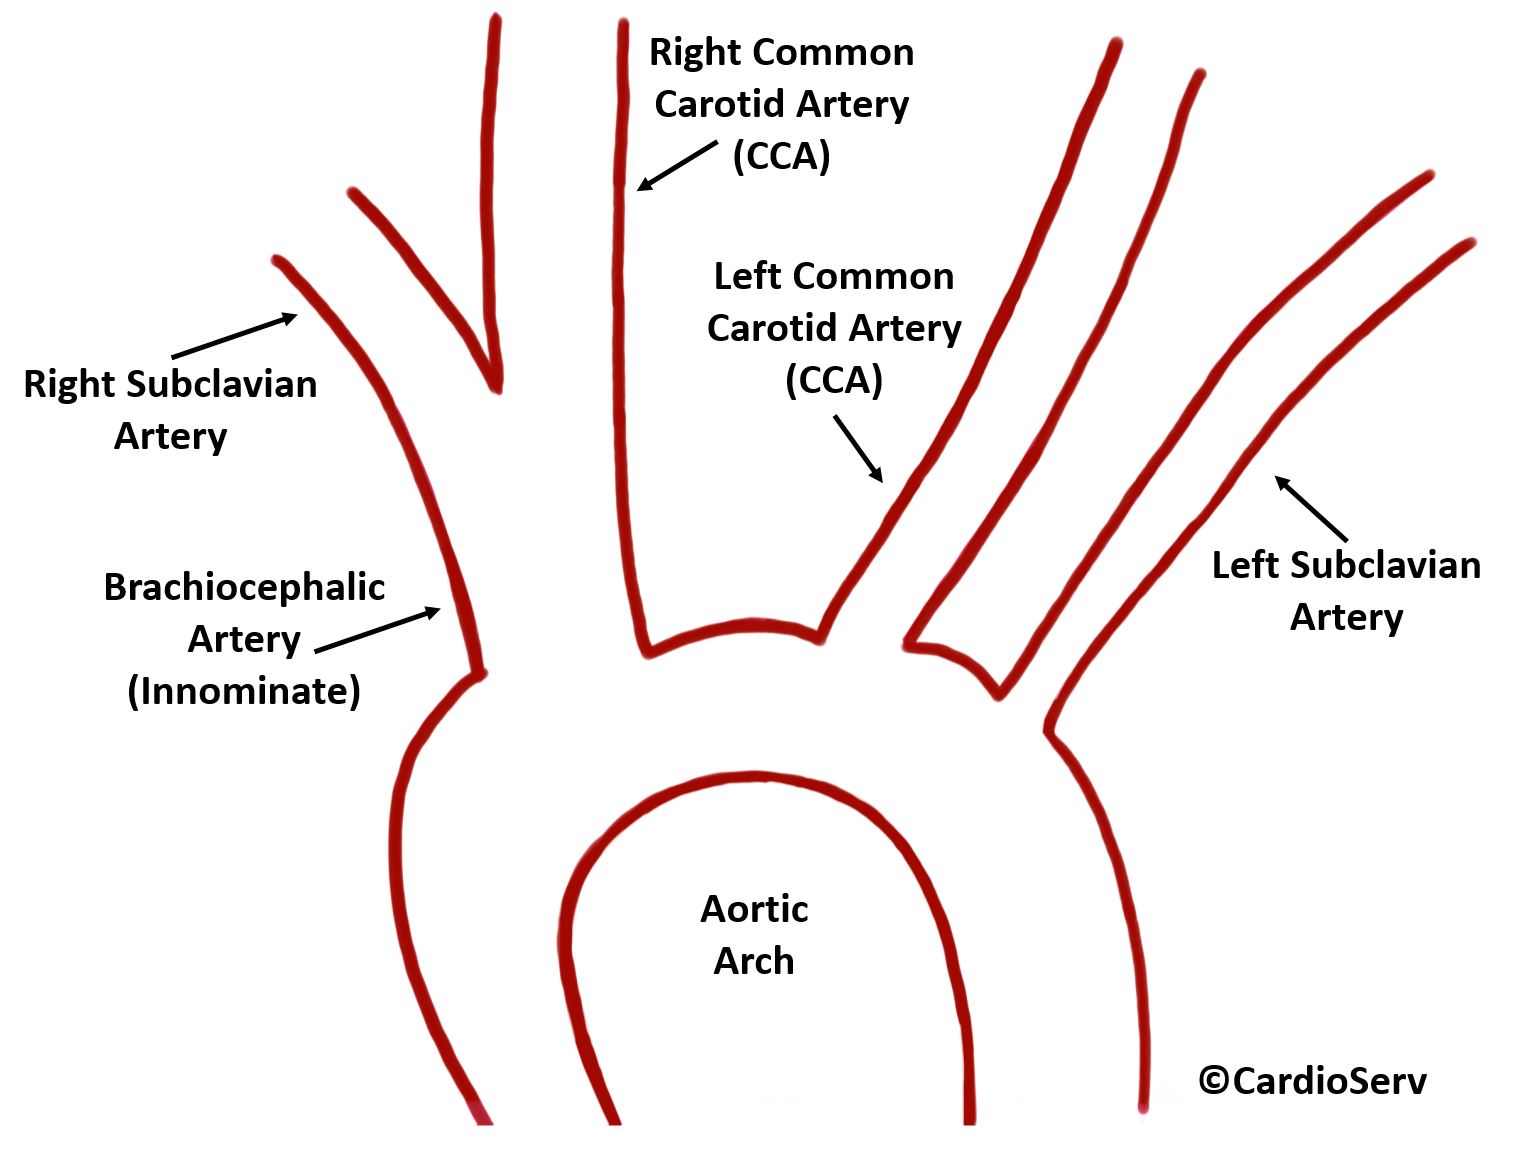 brachiocephalic artery